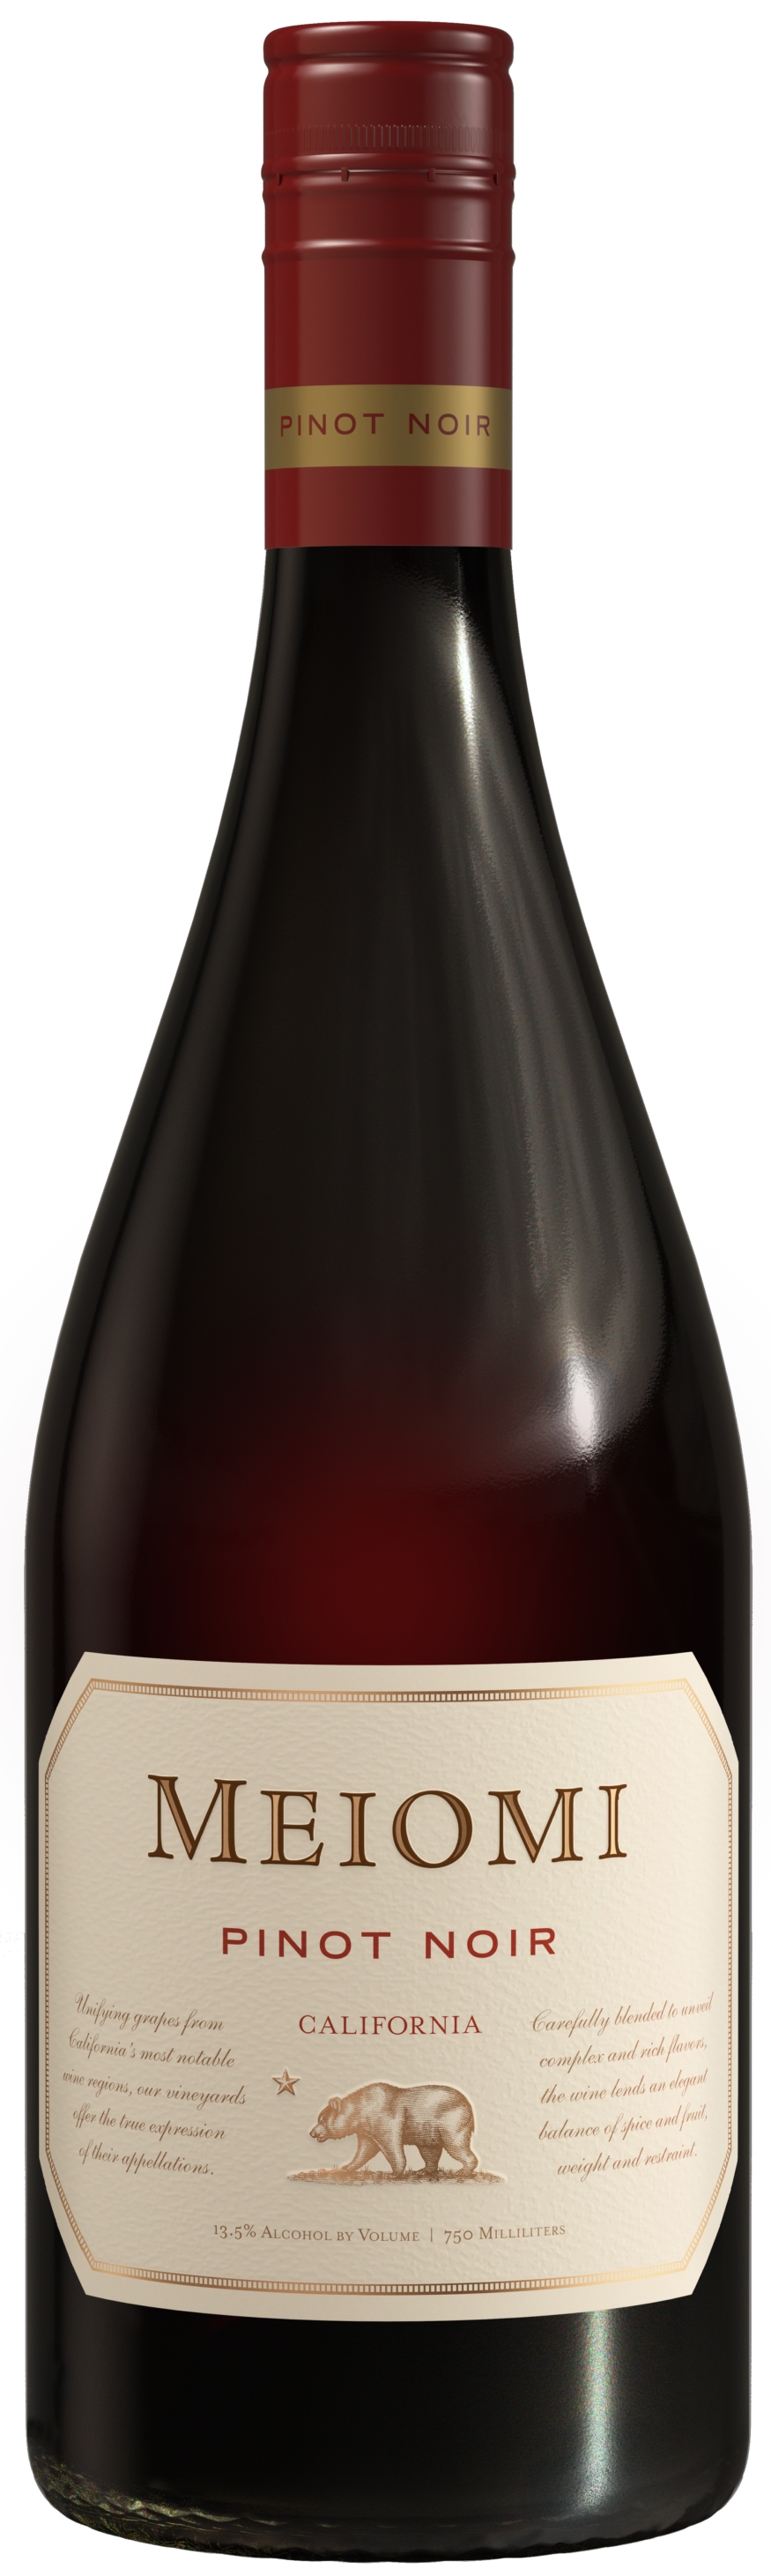 Pinot noir - Wikipedia